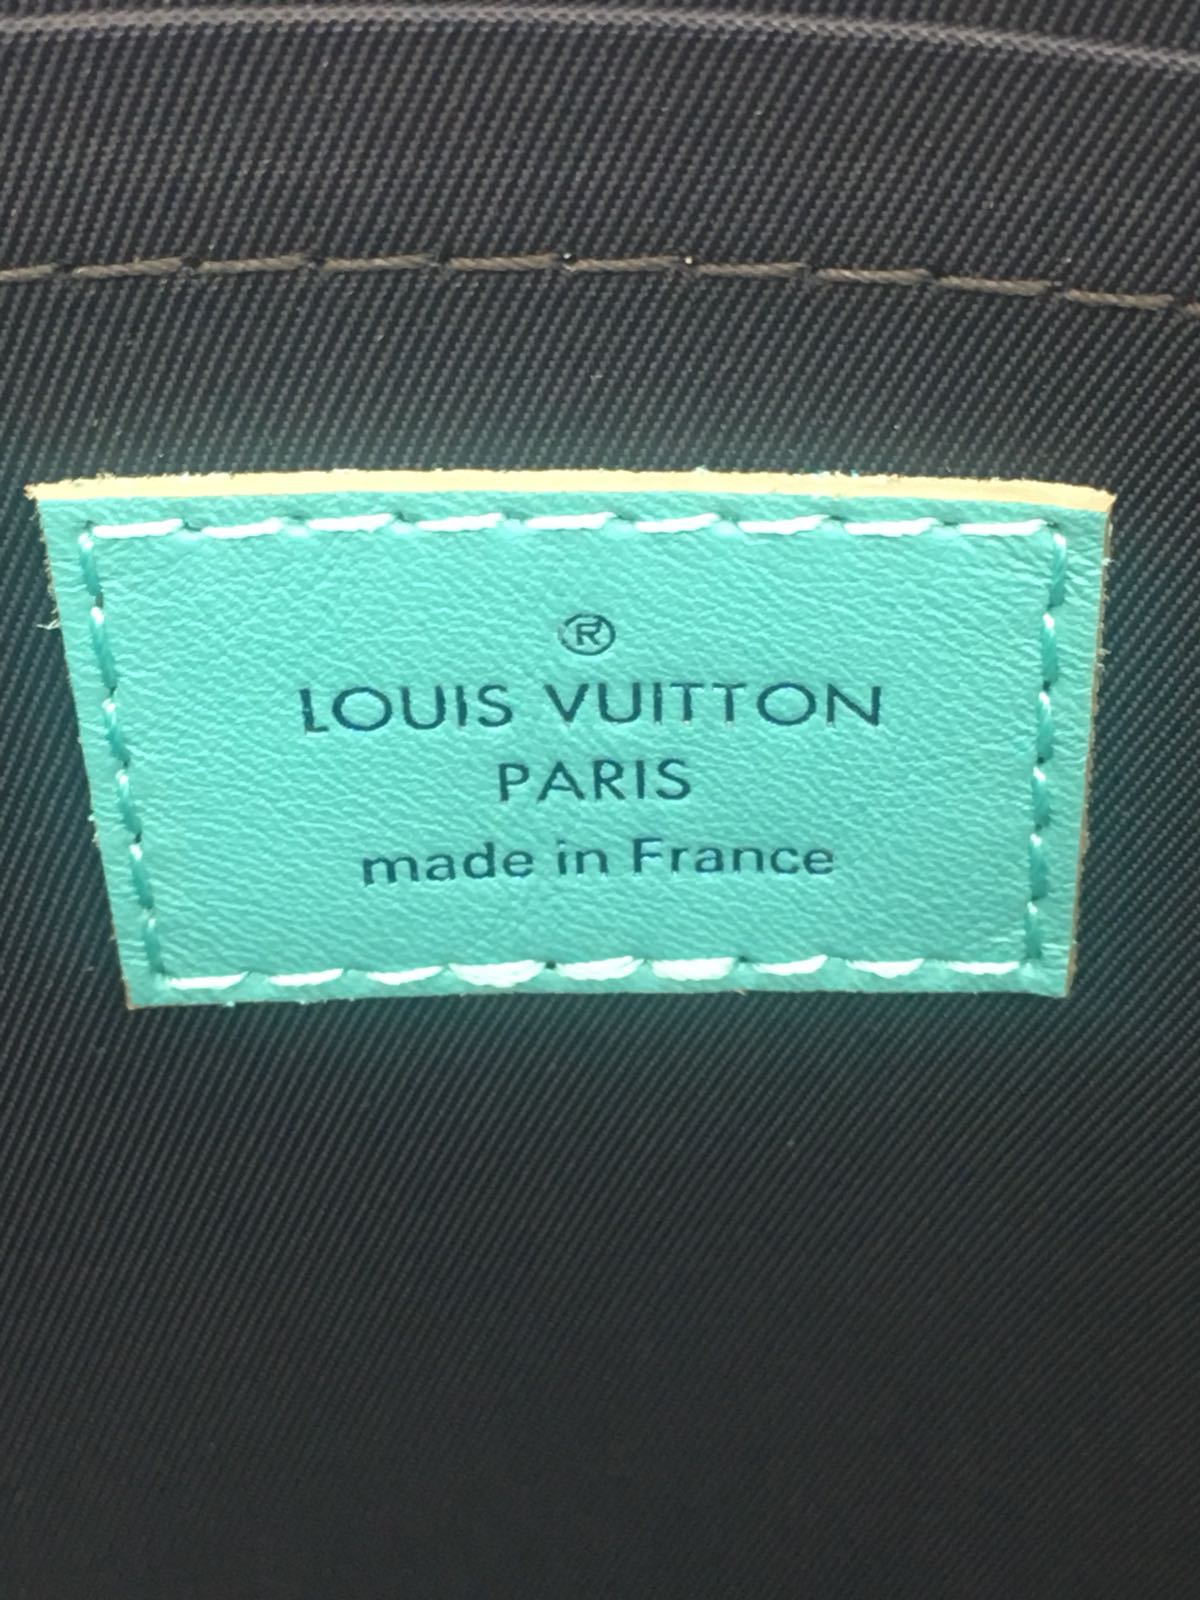 Louis Vuitton, Pacific Pochette Apollo